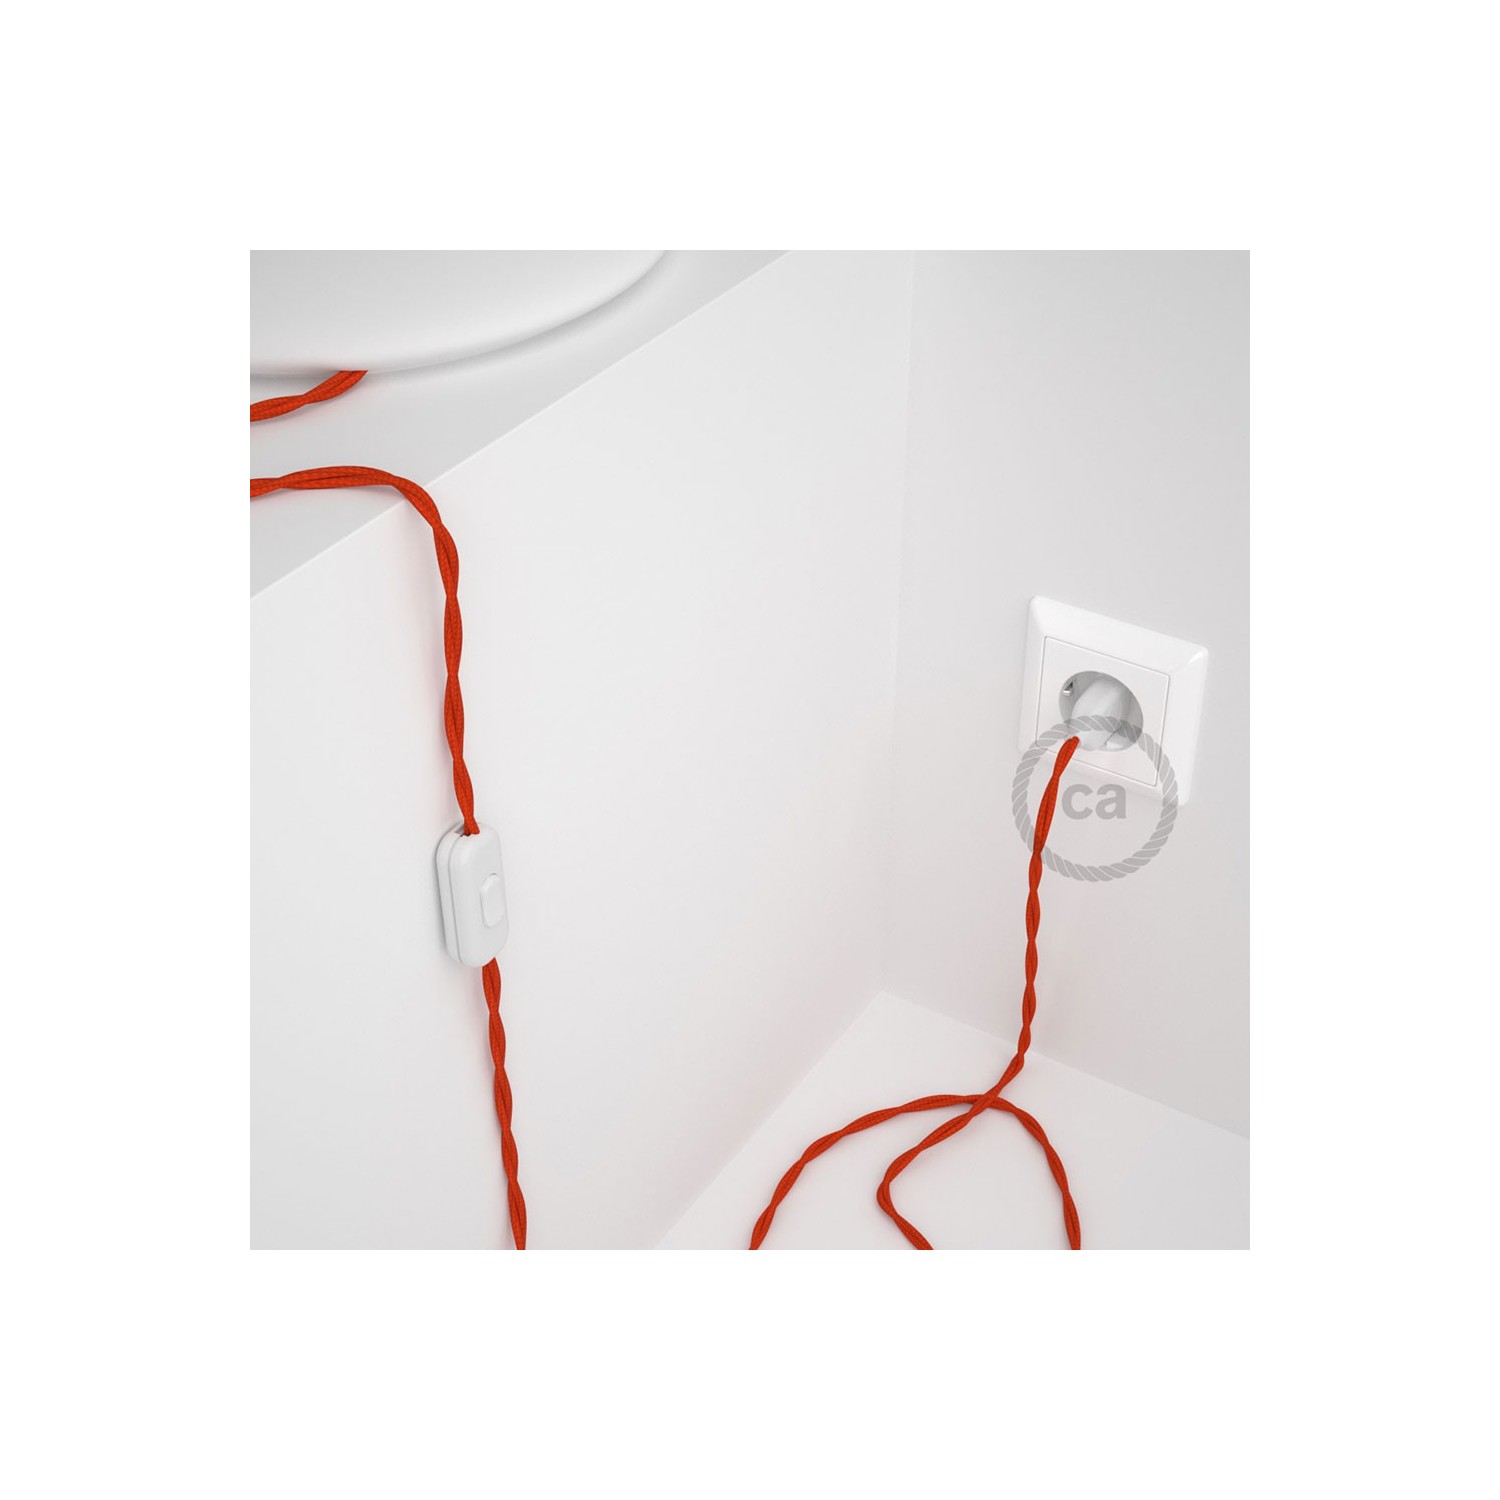 Cordon pour lampe, câble TM15 Effet Soie Orange 1,80 m. Choisissez la couleur de la fiche et de l'interrupteur!